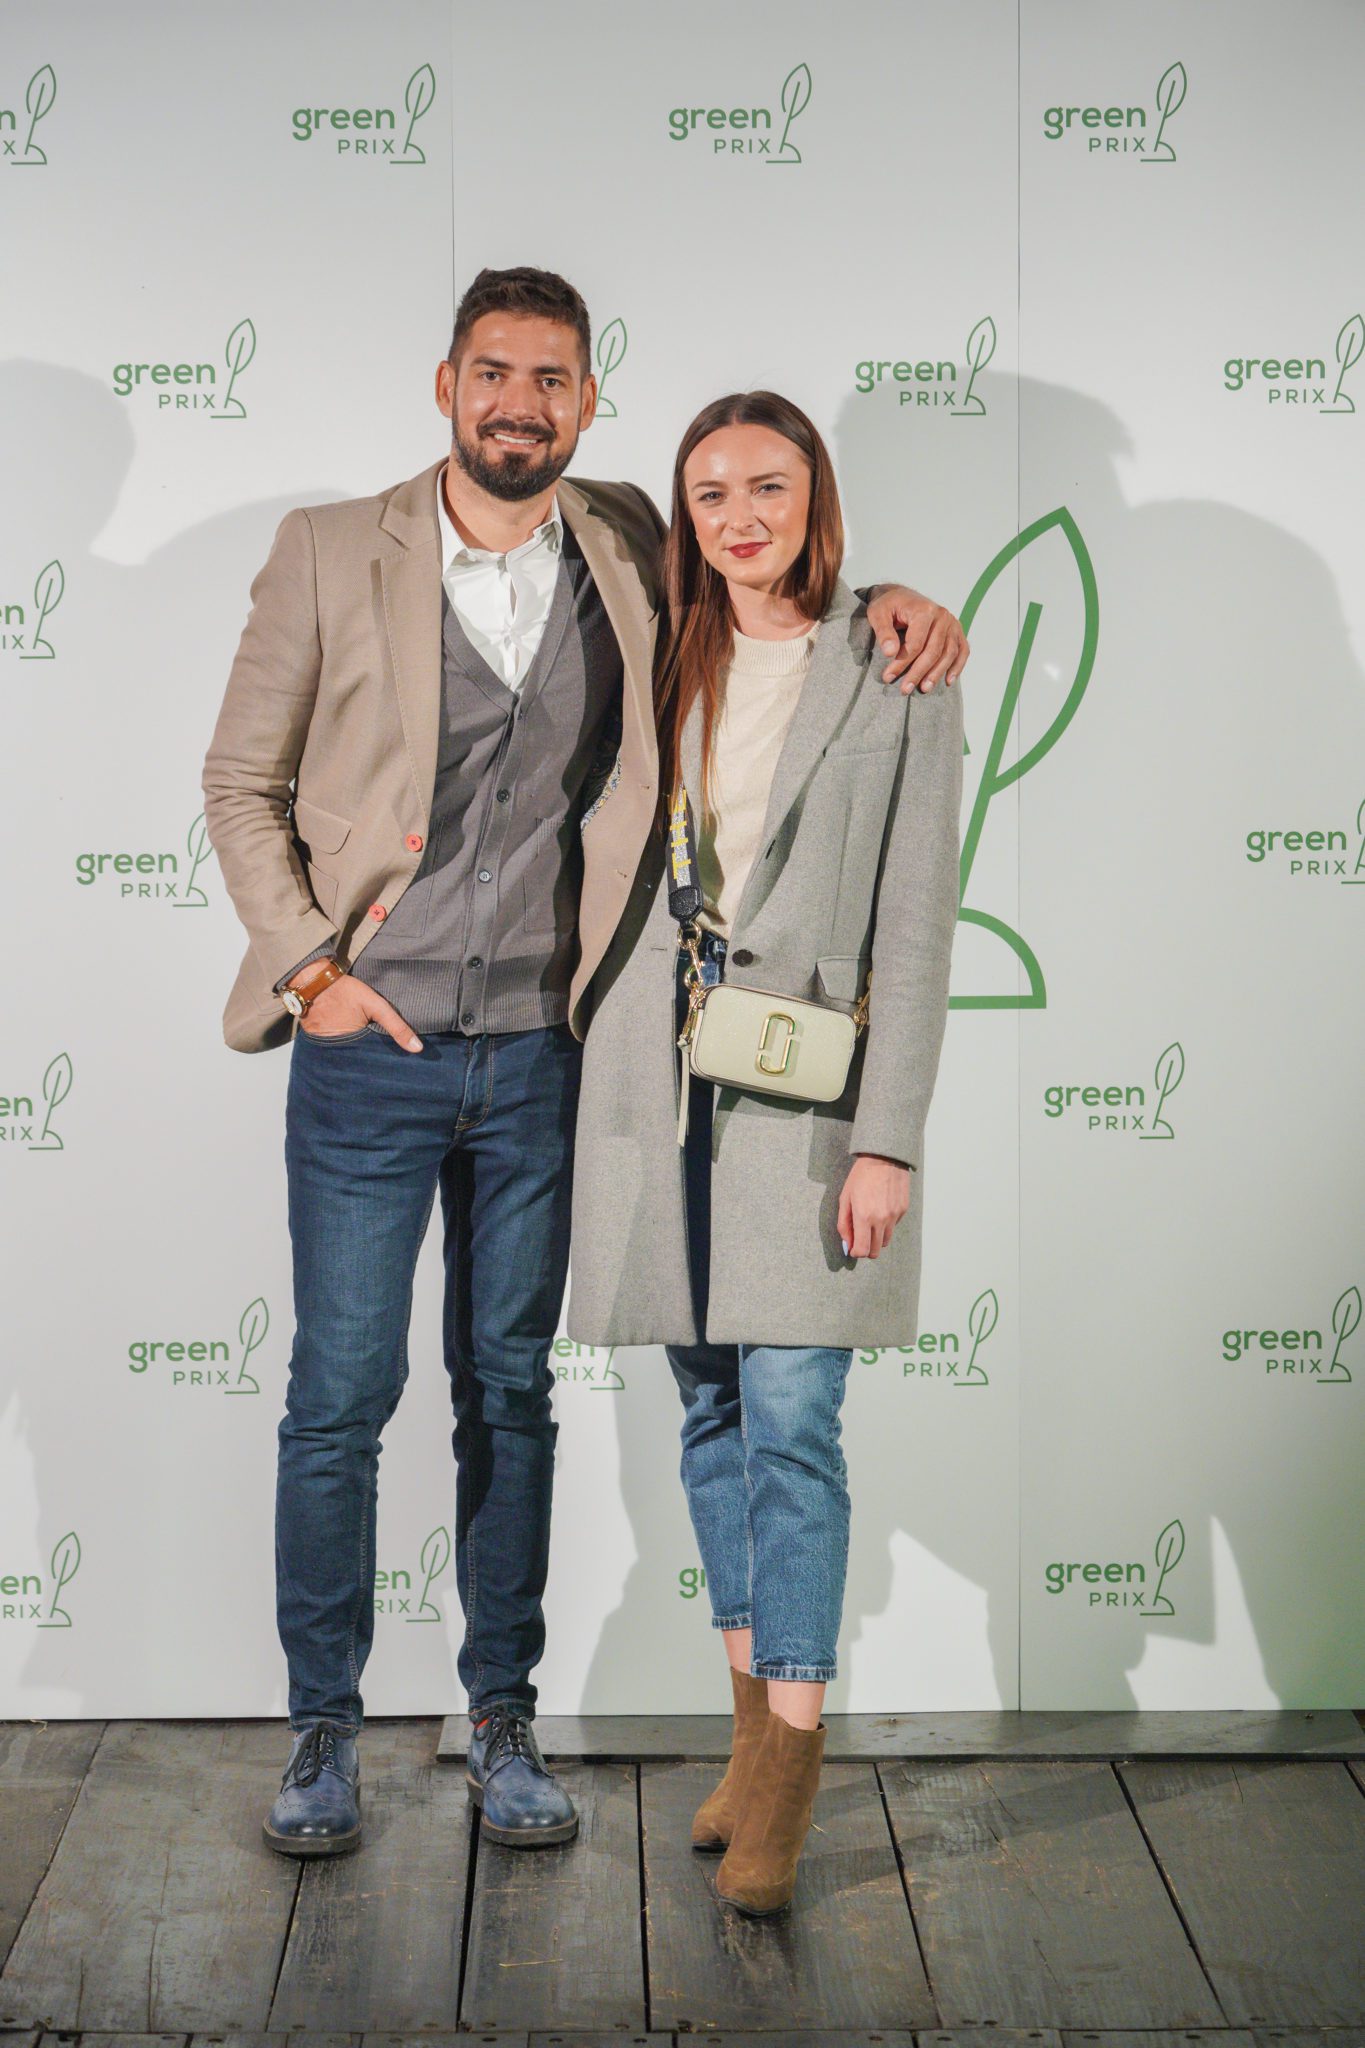 Osnivač portala Green.hr i direktor Greencajt festivala Vinko Filipić i Danijela Goreta, glavna urednica portala Green.hr